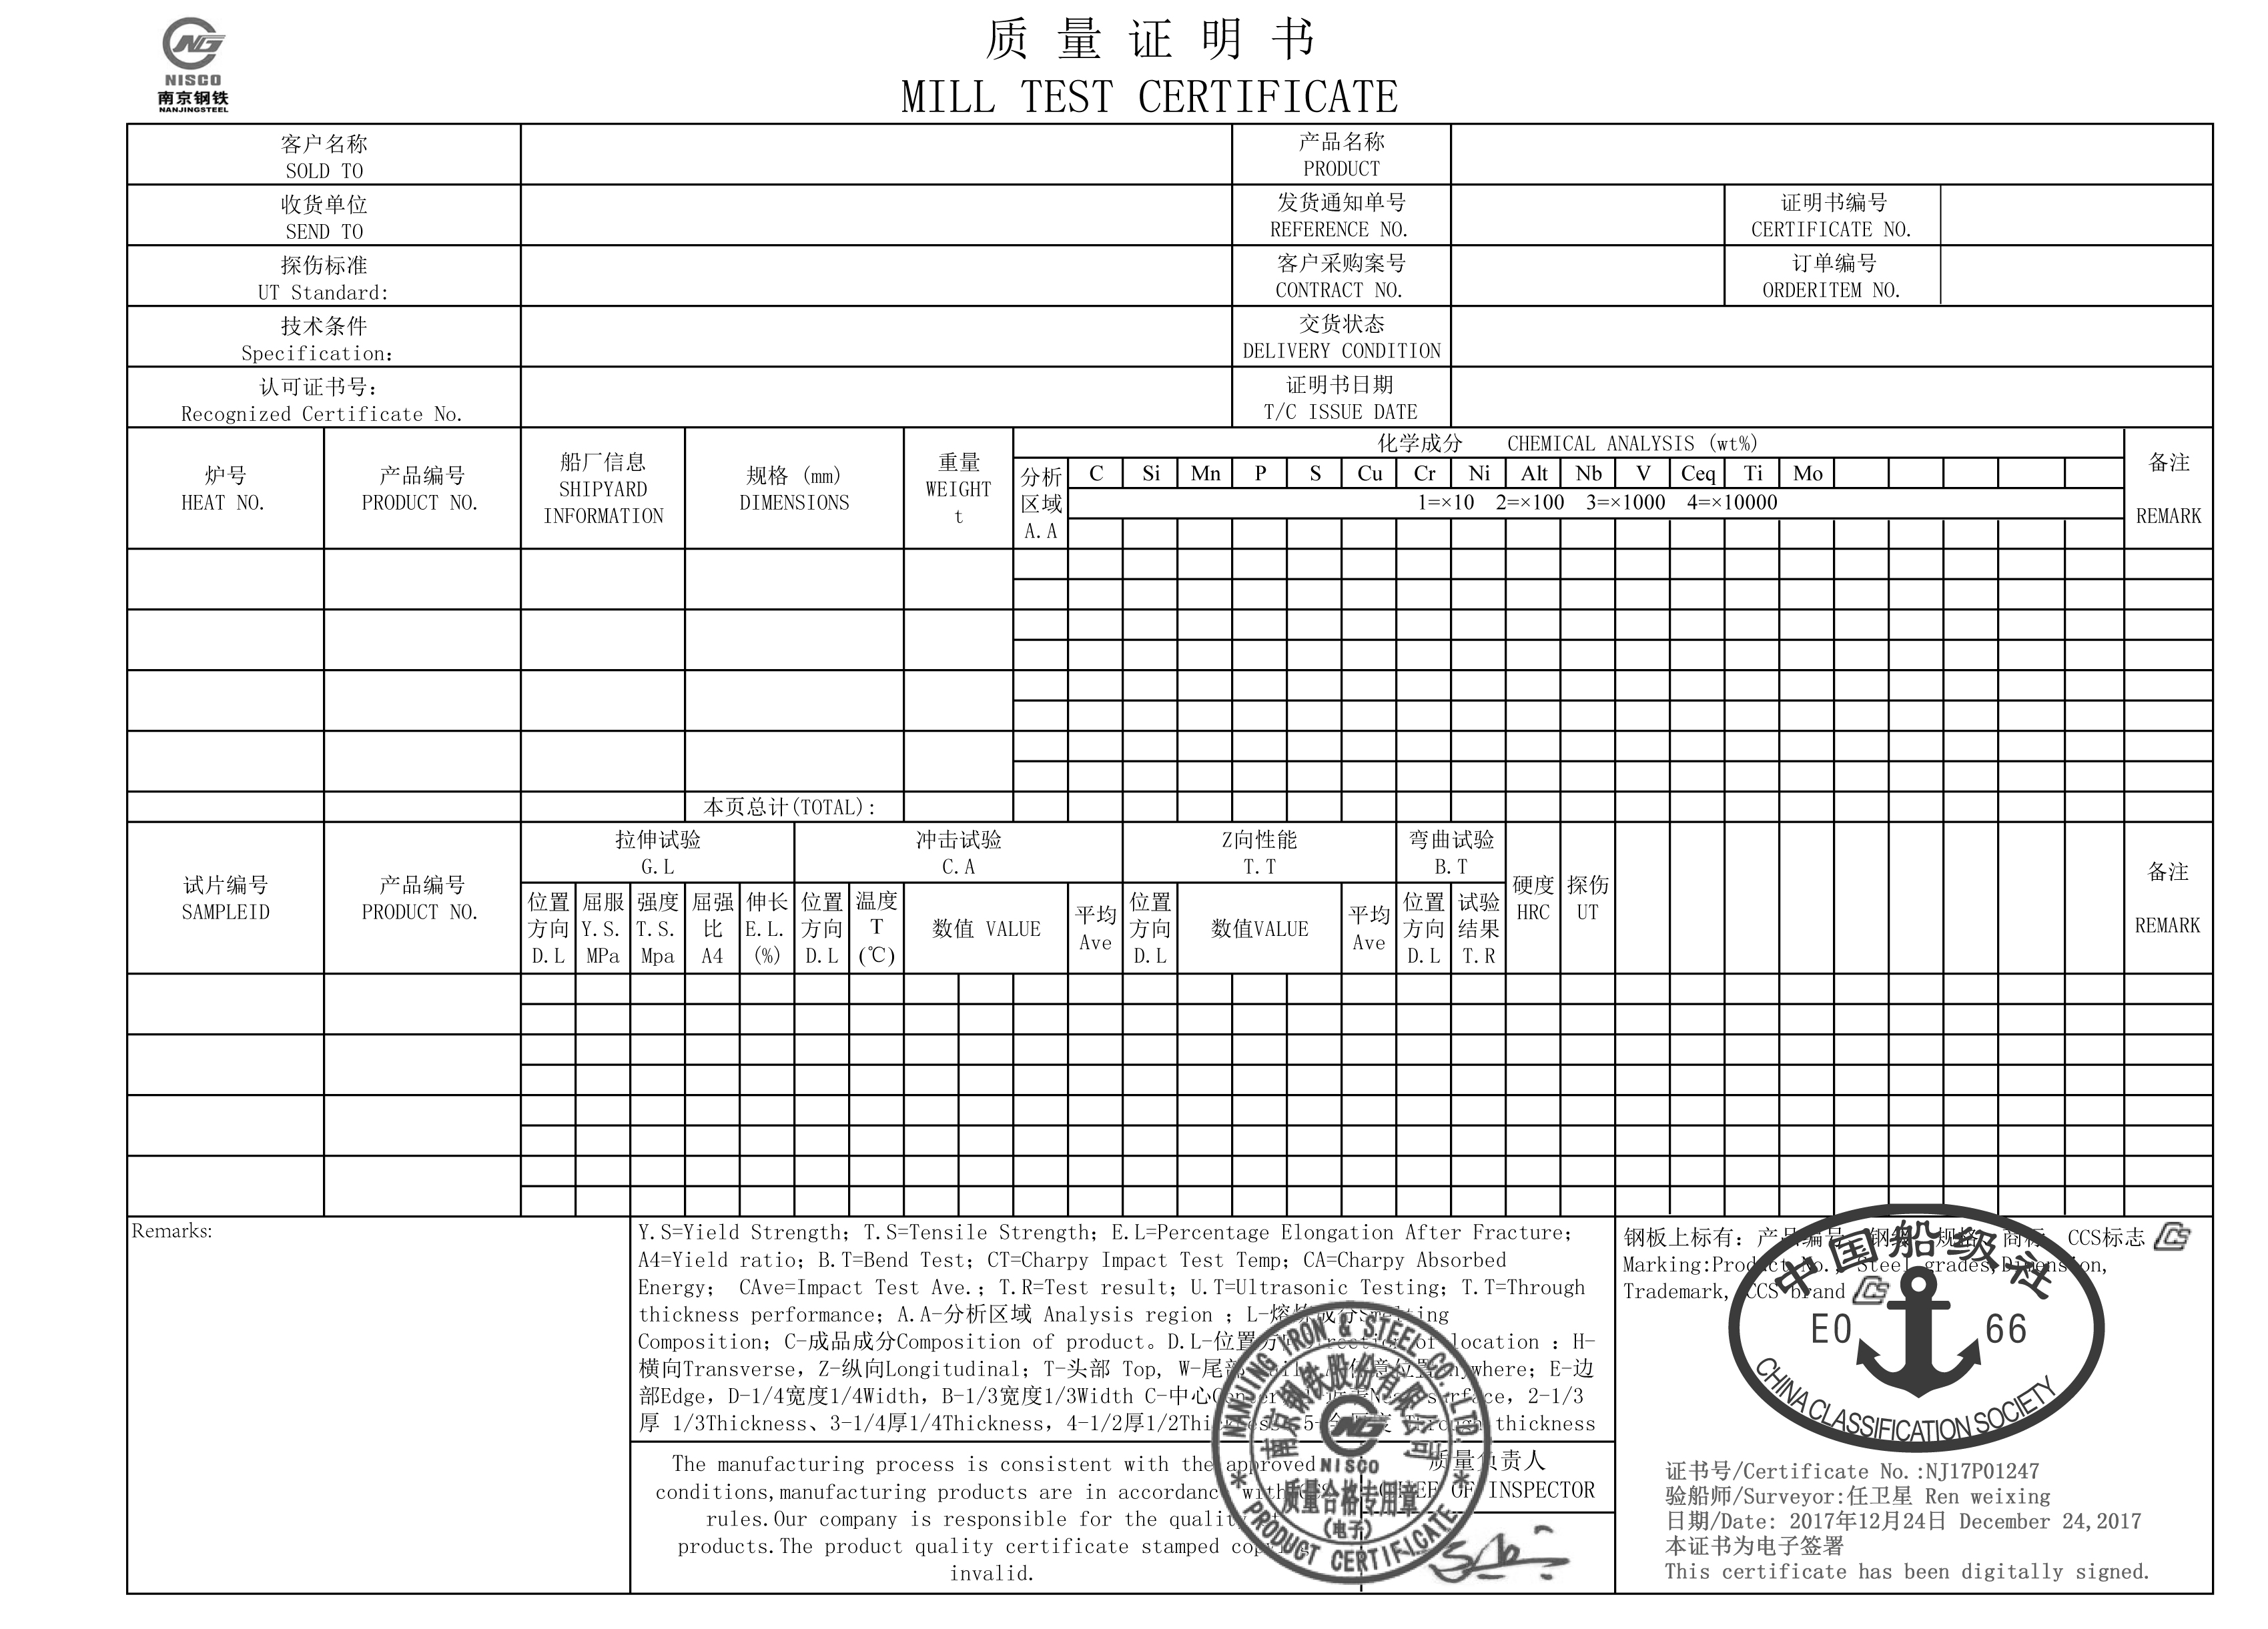 MTC 3.1 сертифікат морського сталевого листа